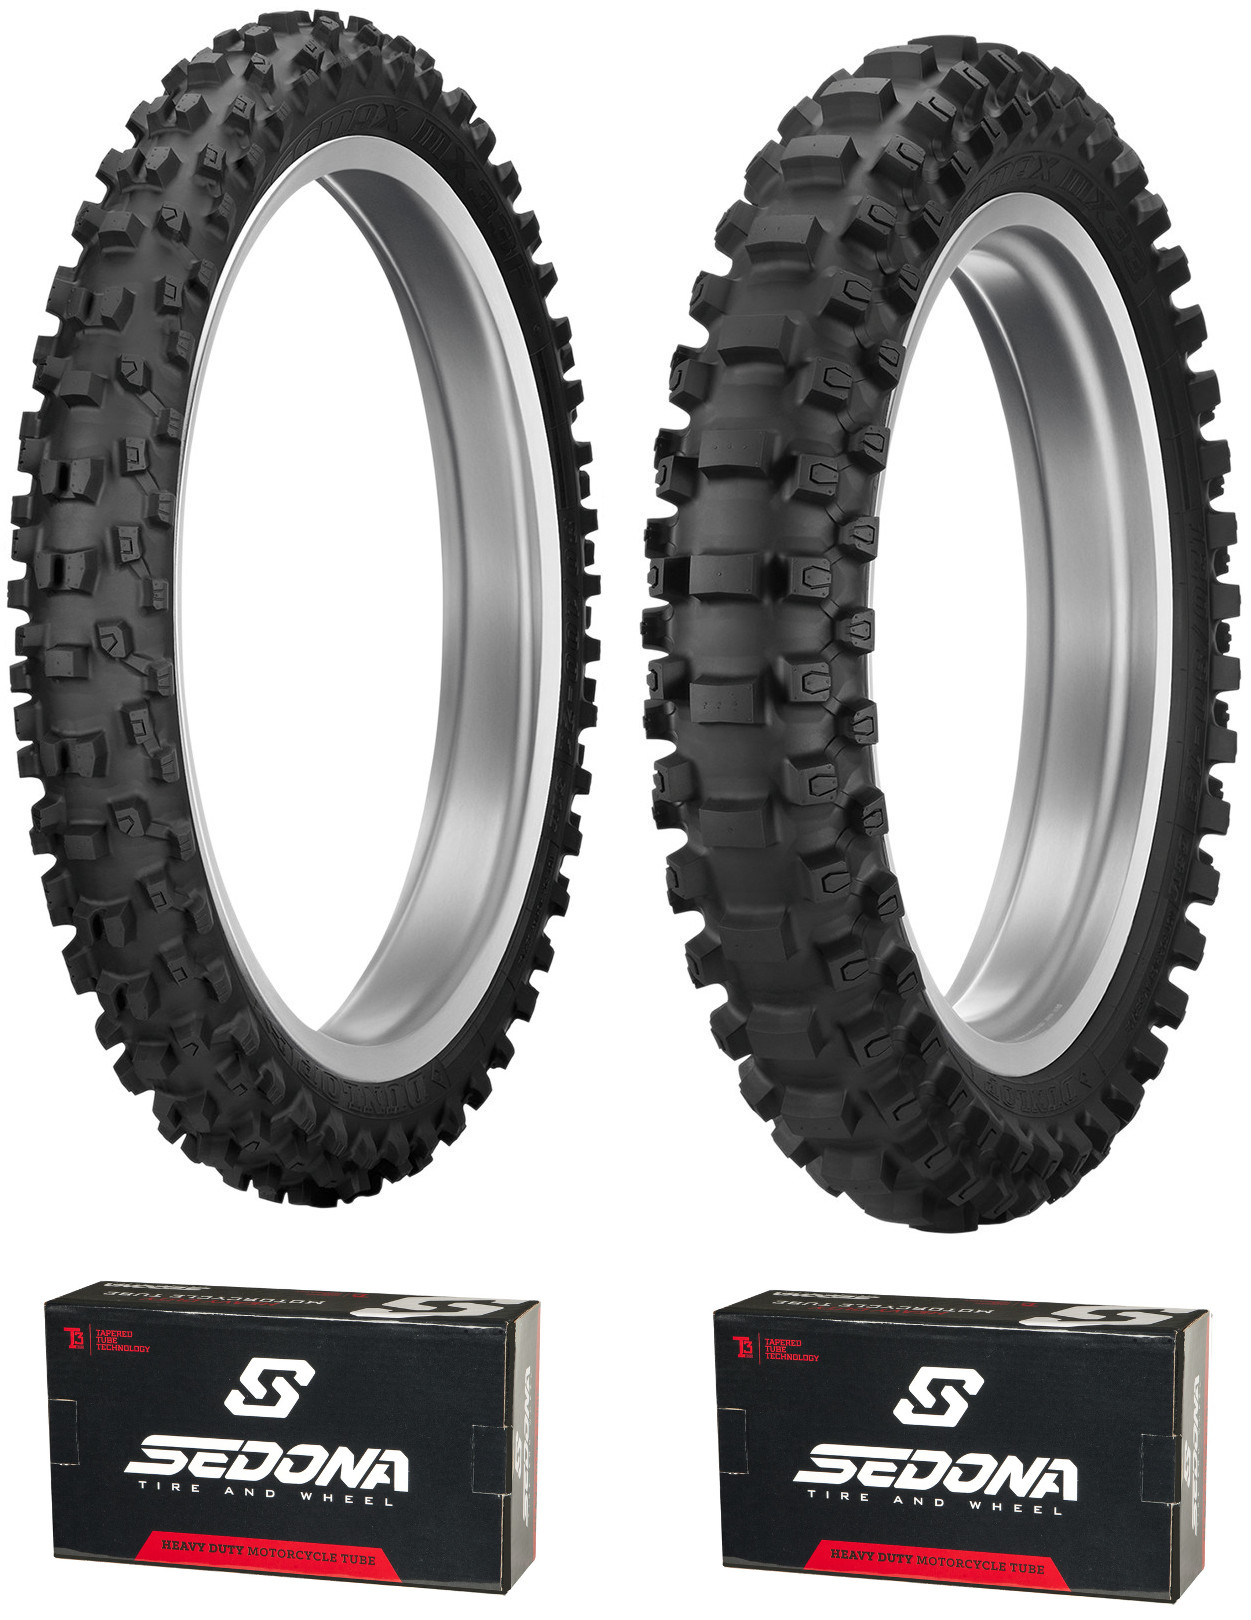 MX33 80/100-21 & 110/90-19 Tire Kit - w/ HD Sedona Tubes - Click Image to Close